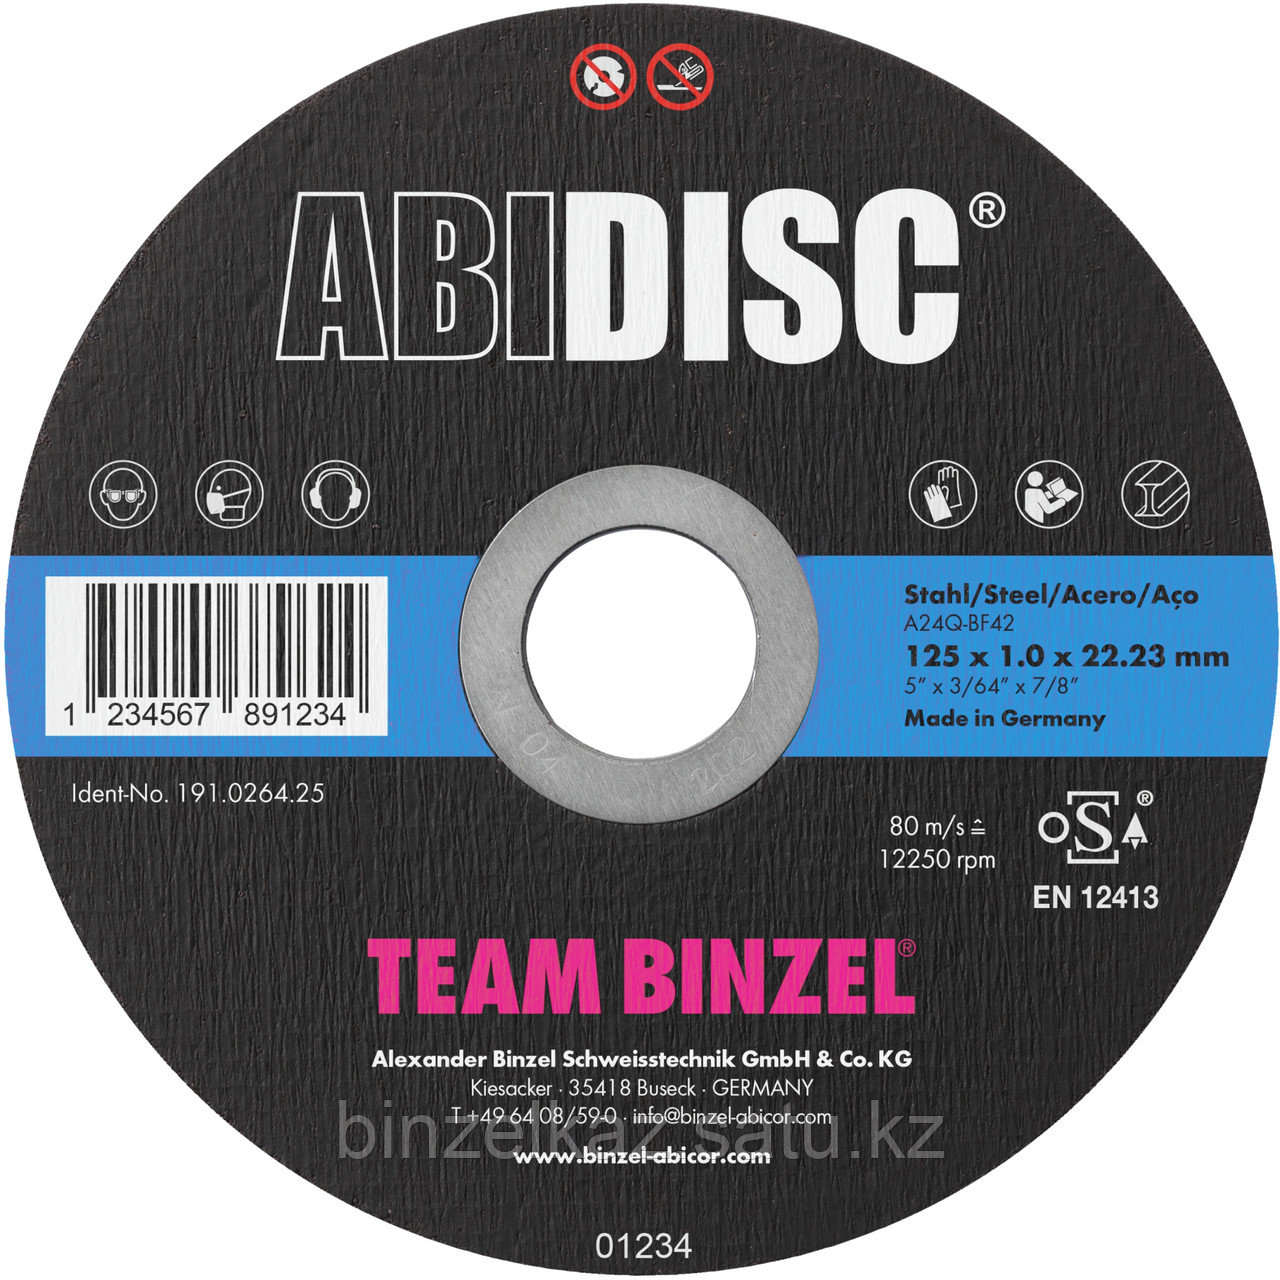 Шлифовально-отрезной диск 230 x 3 x 22.23 мм, исполнение с поднутрением  ABIDISC CUT